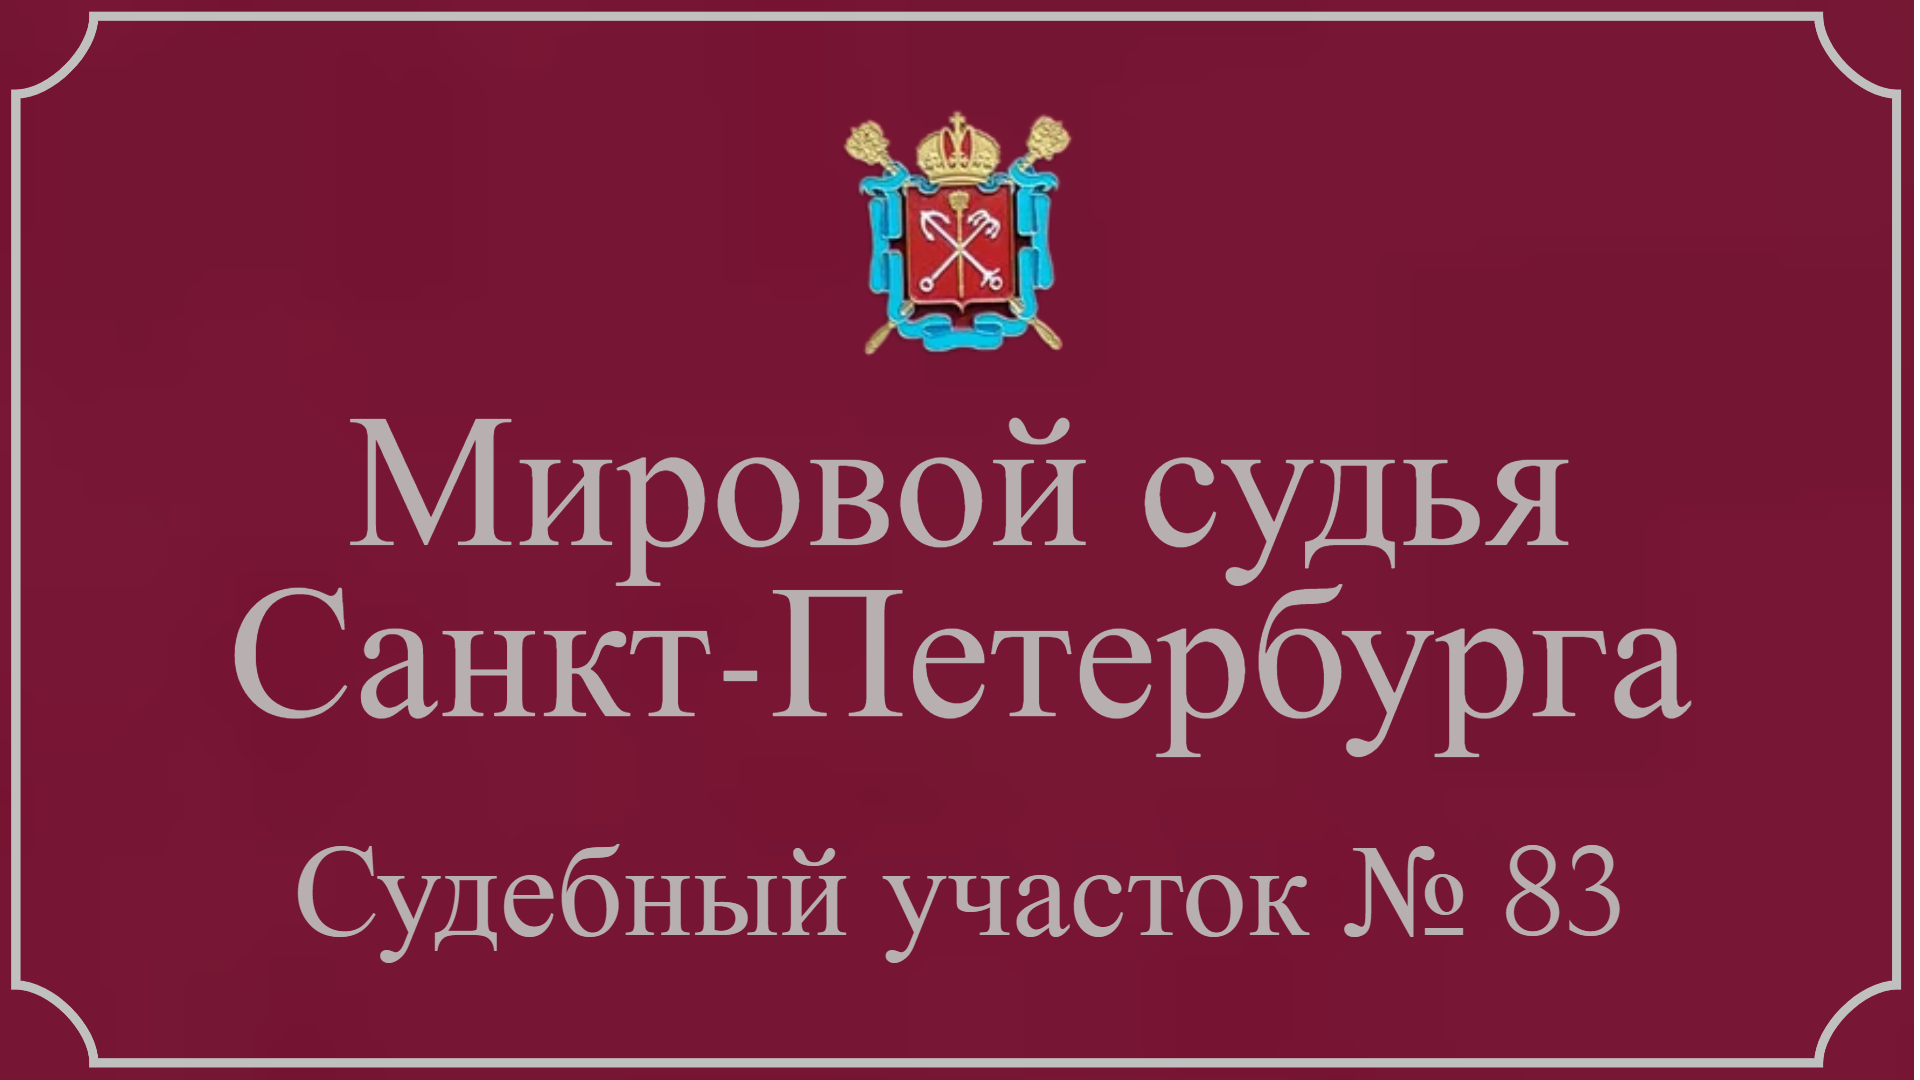 Информация по 83 судебному участку в Санкт-Петербурге.